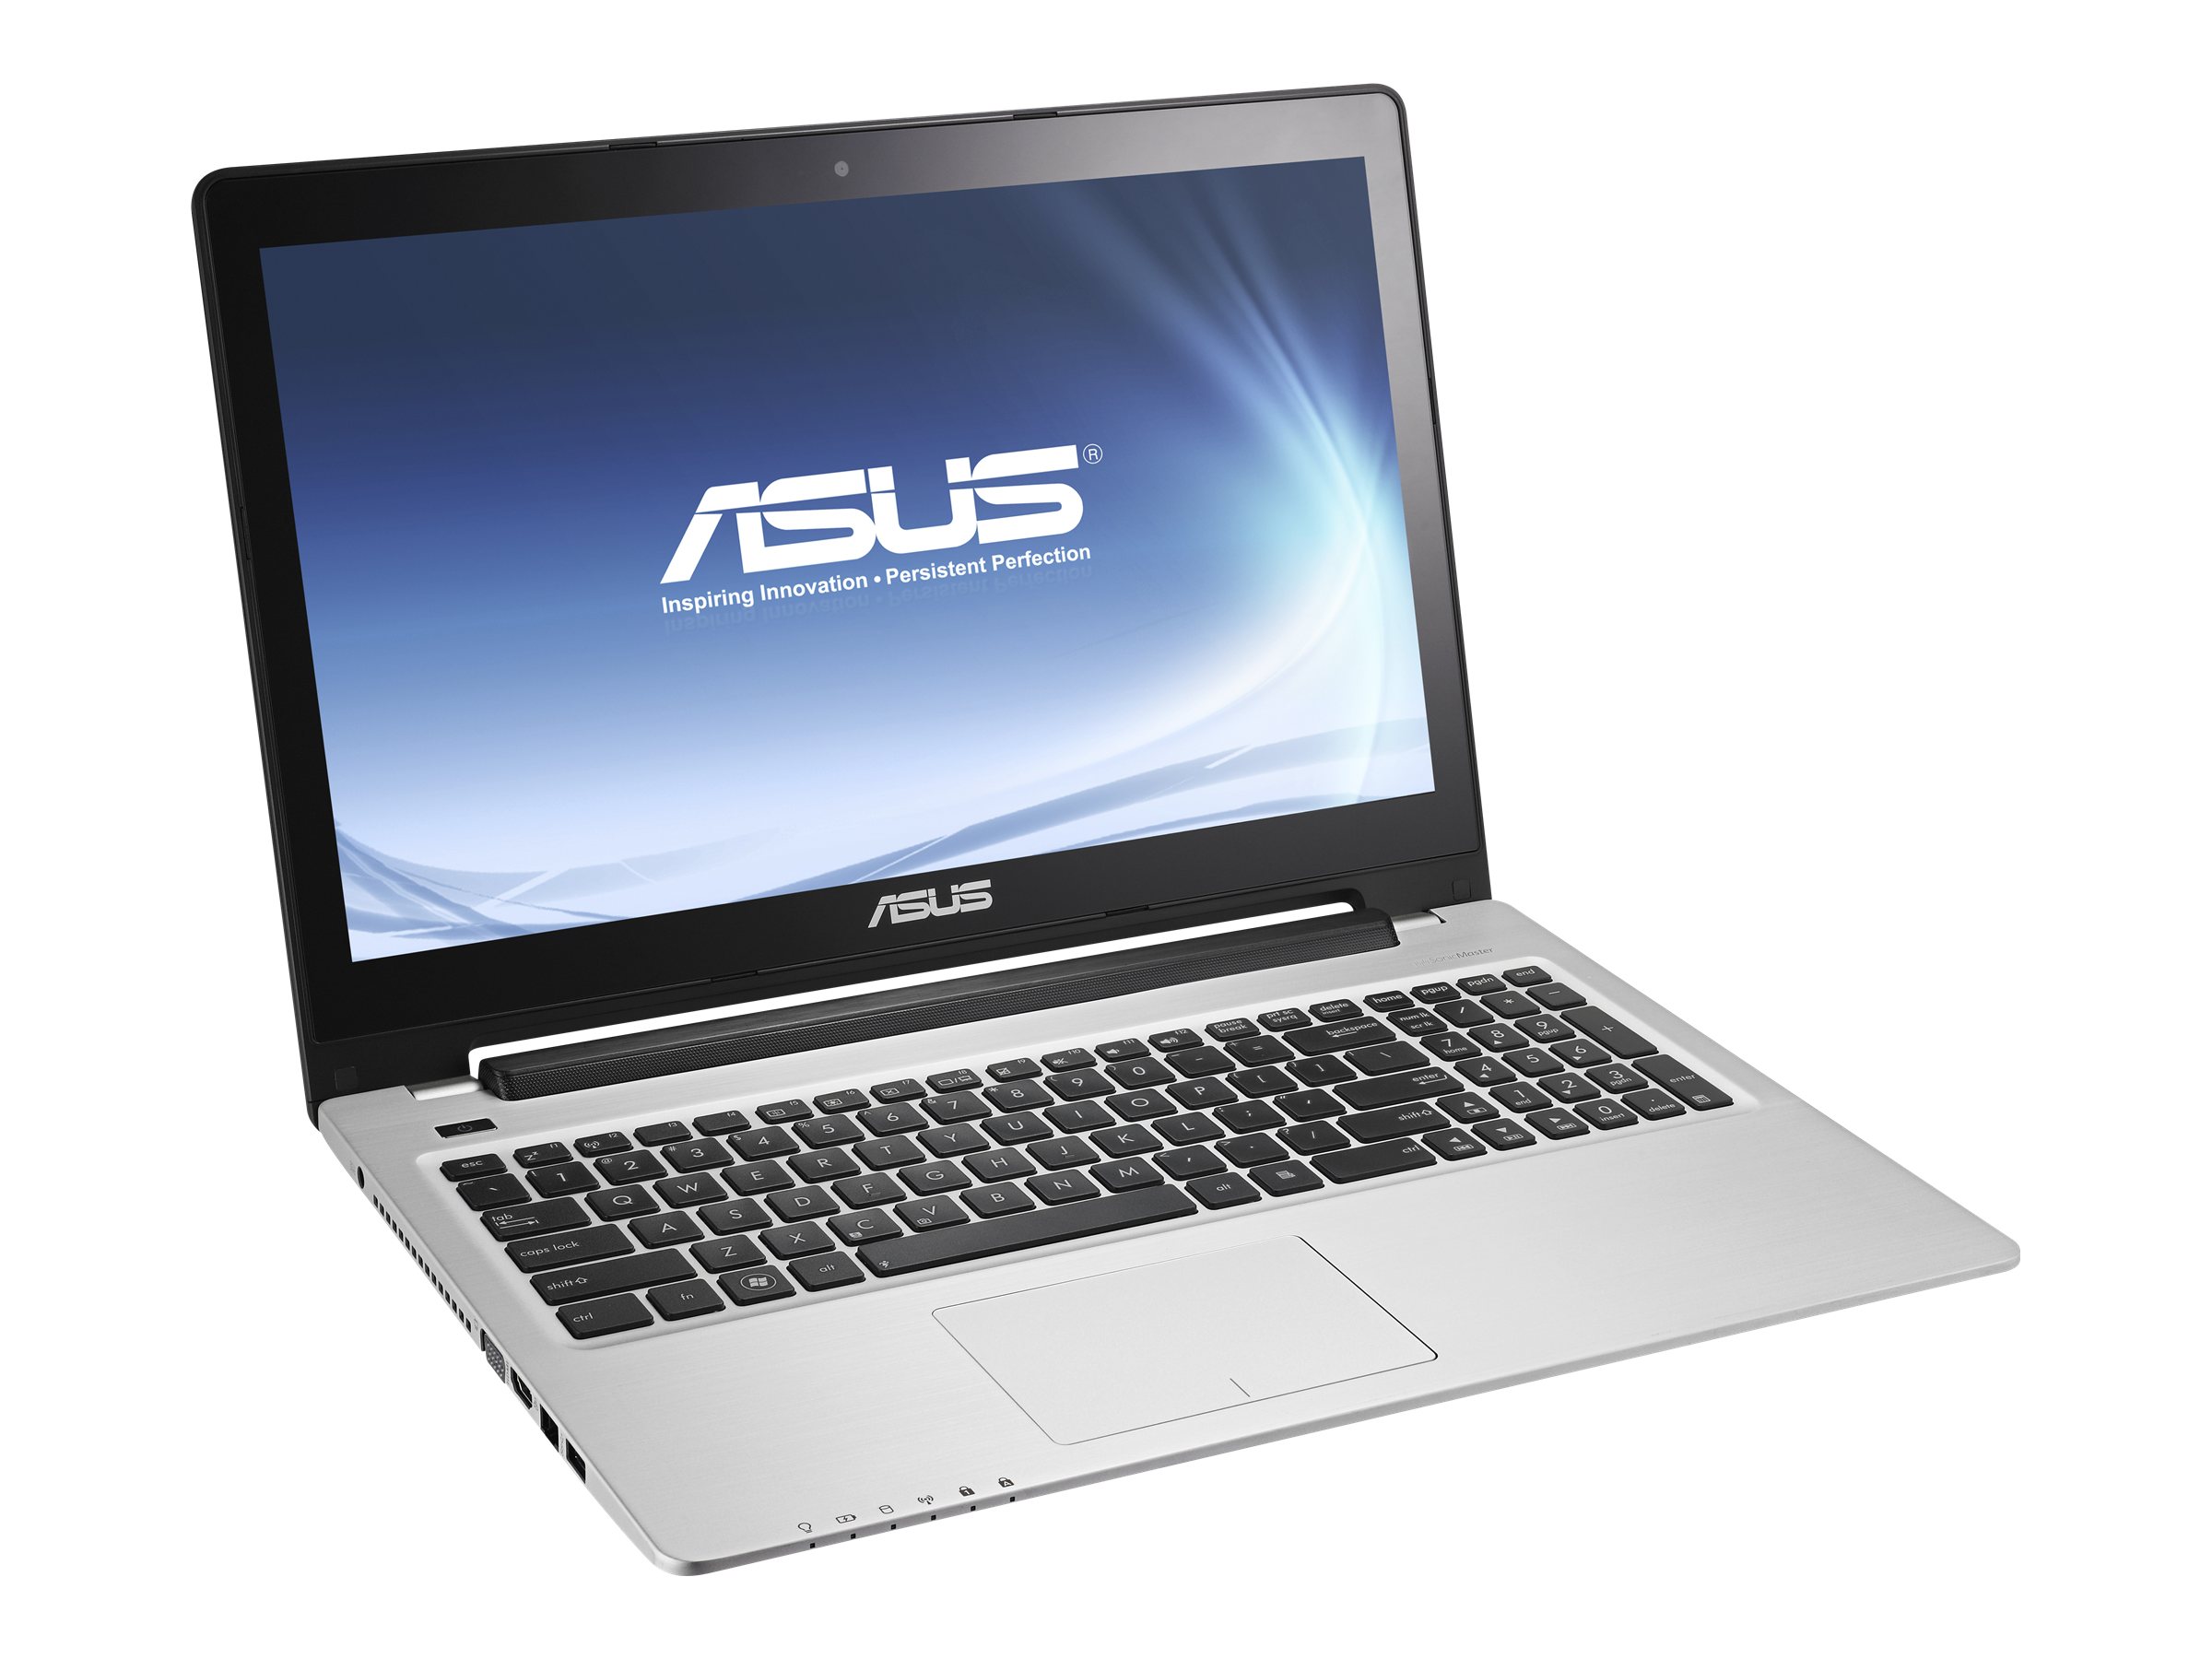 ASUS VivoBook S550CA (CJ037H)